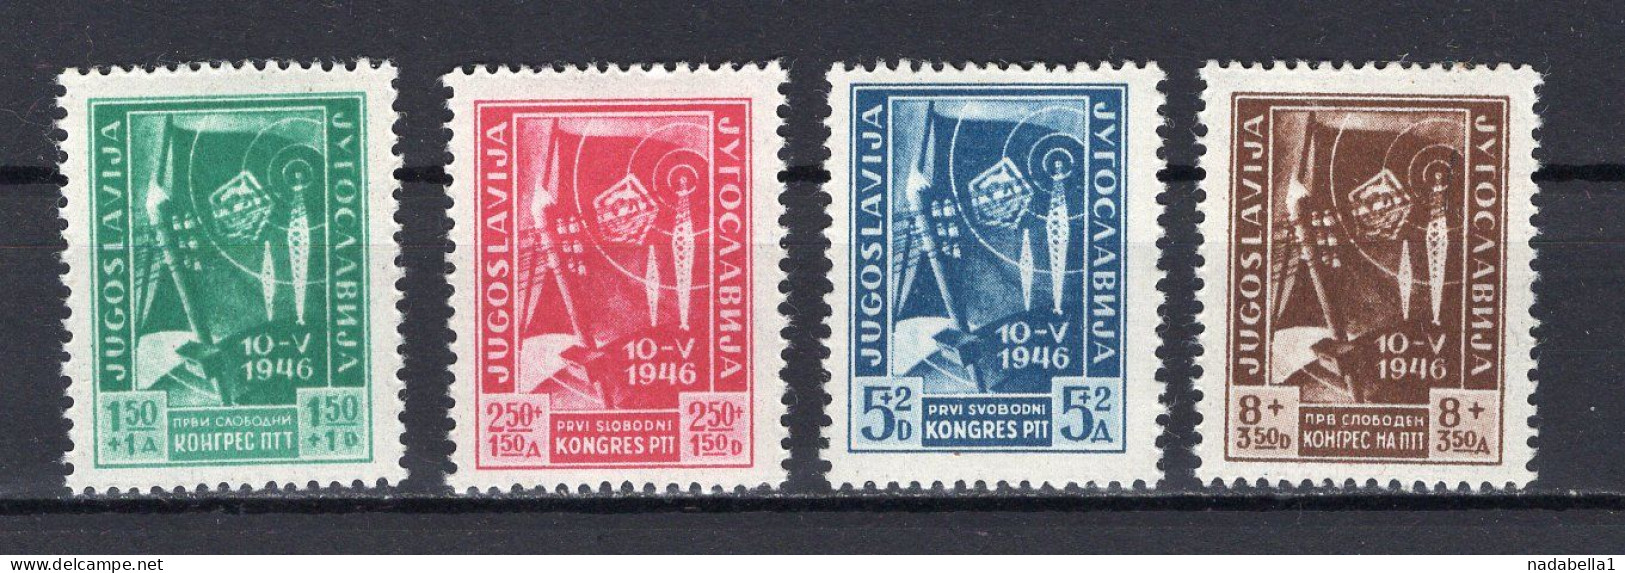 1946. YUGOSLAVIA,FIRST PTT CONGRESS,SET OF 4 STAMPS,MNH - Ungebraucht